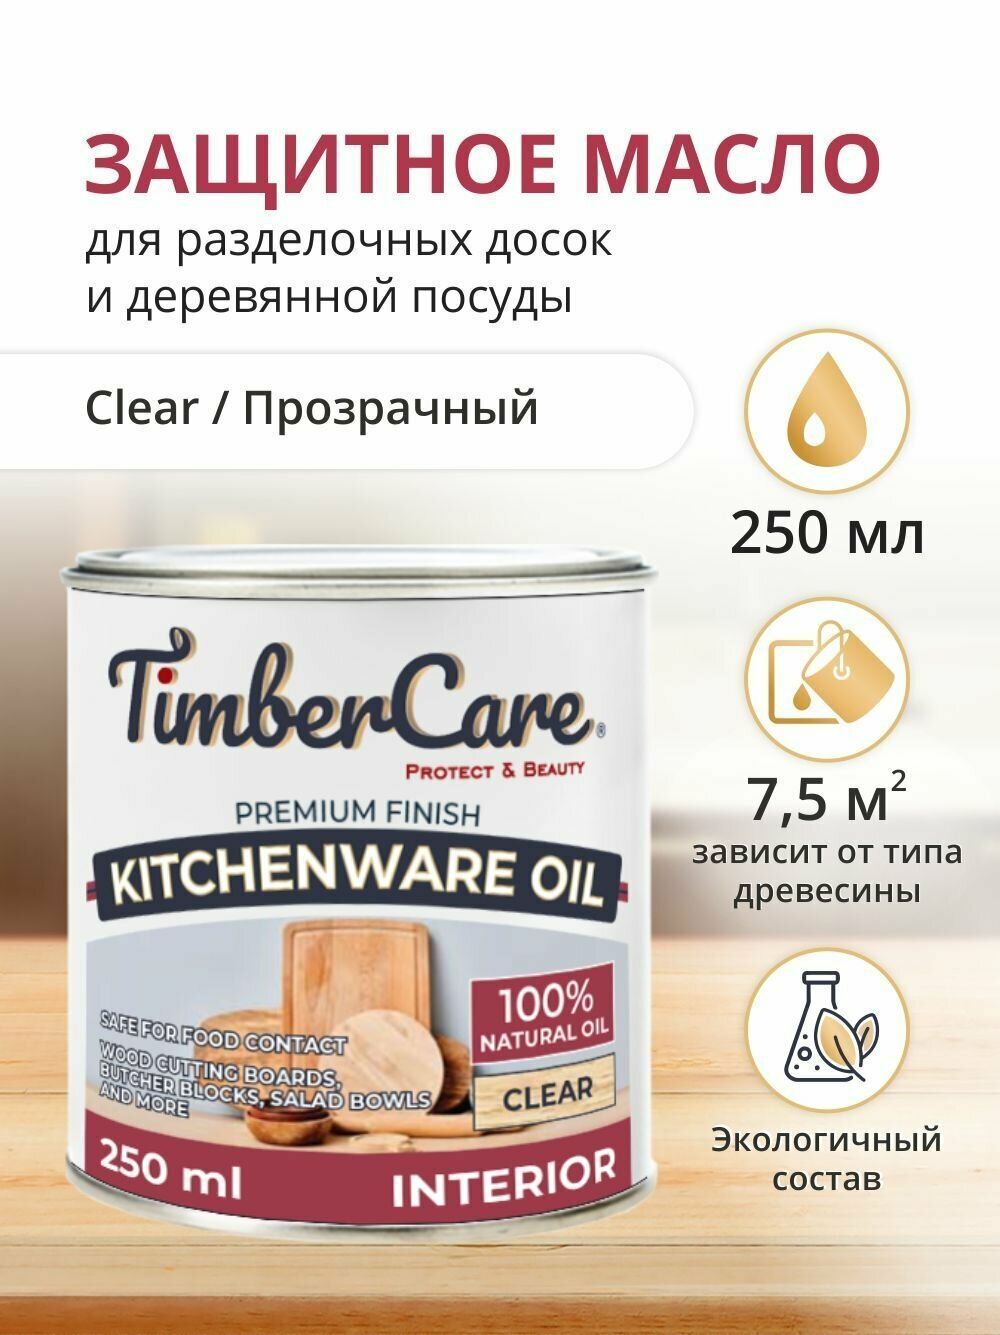 Пропитка для дерева и столешниц TimberCare Kitchenware Oil, масло для дерева и разделочных досок, деревянной посуды, прозрачное, 0.250л, матовый